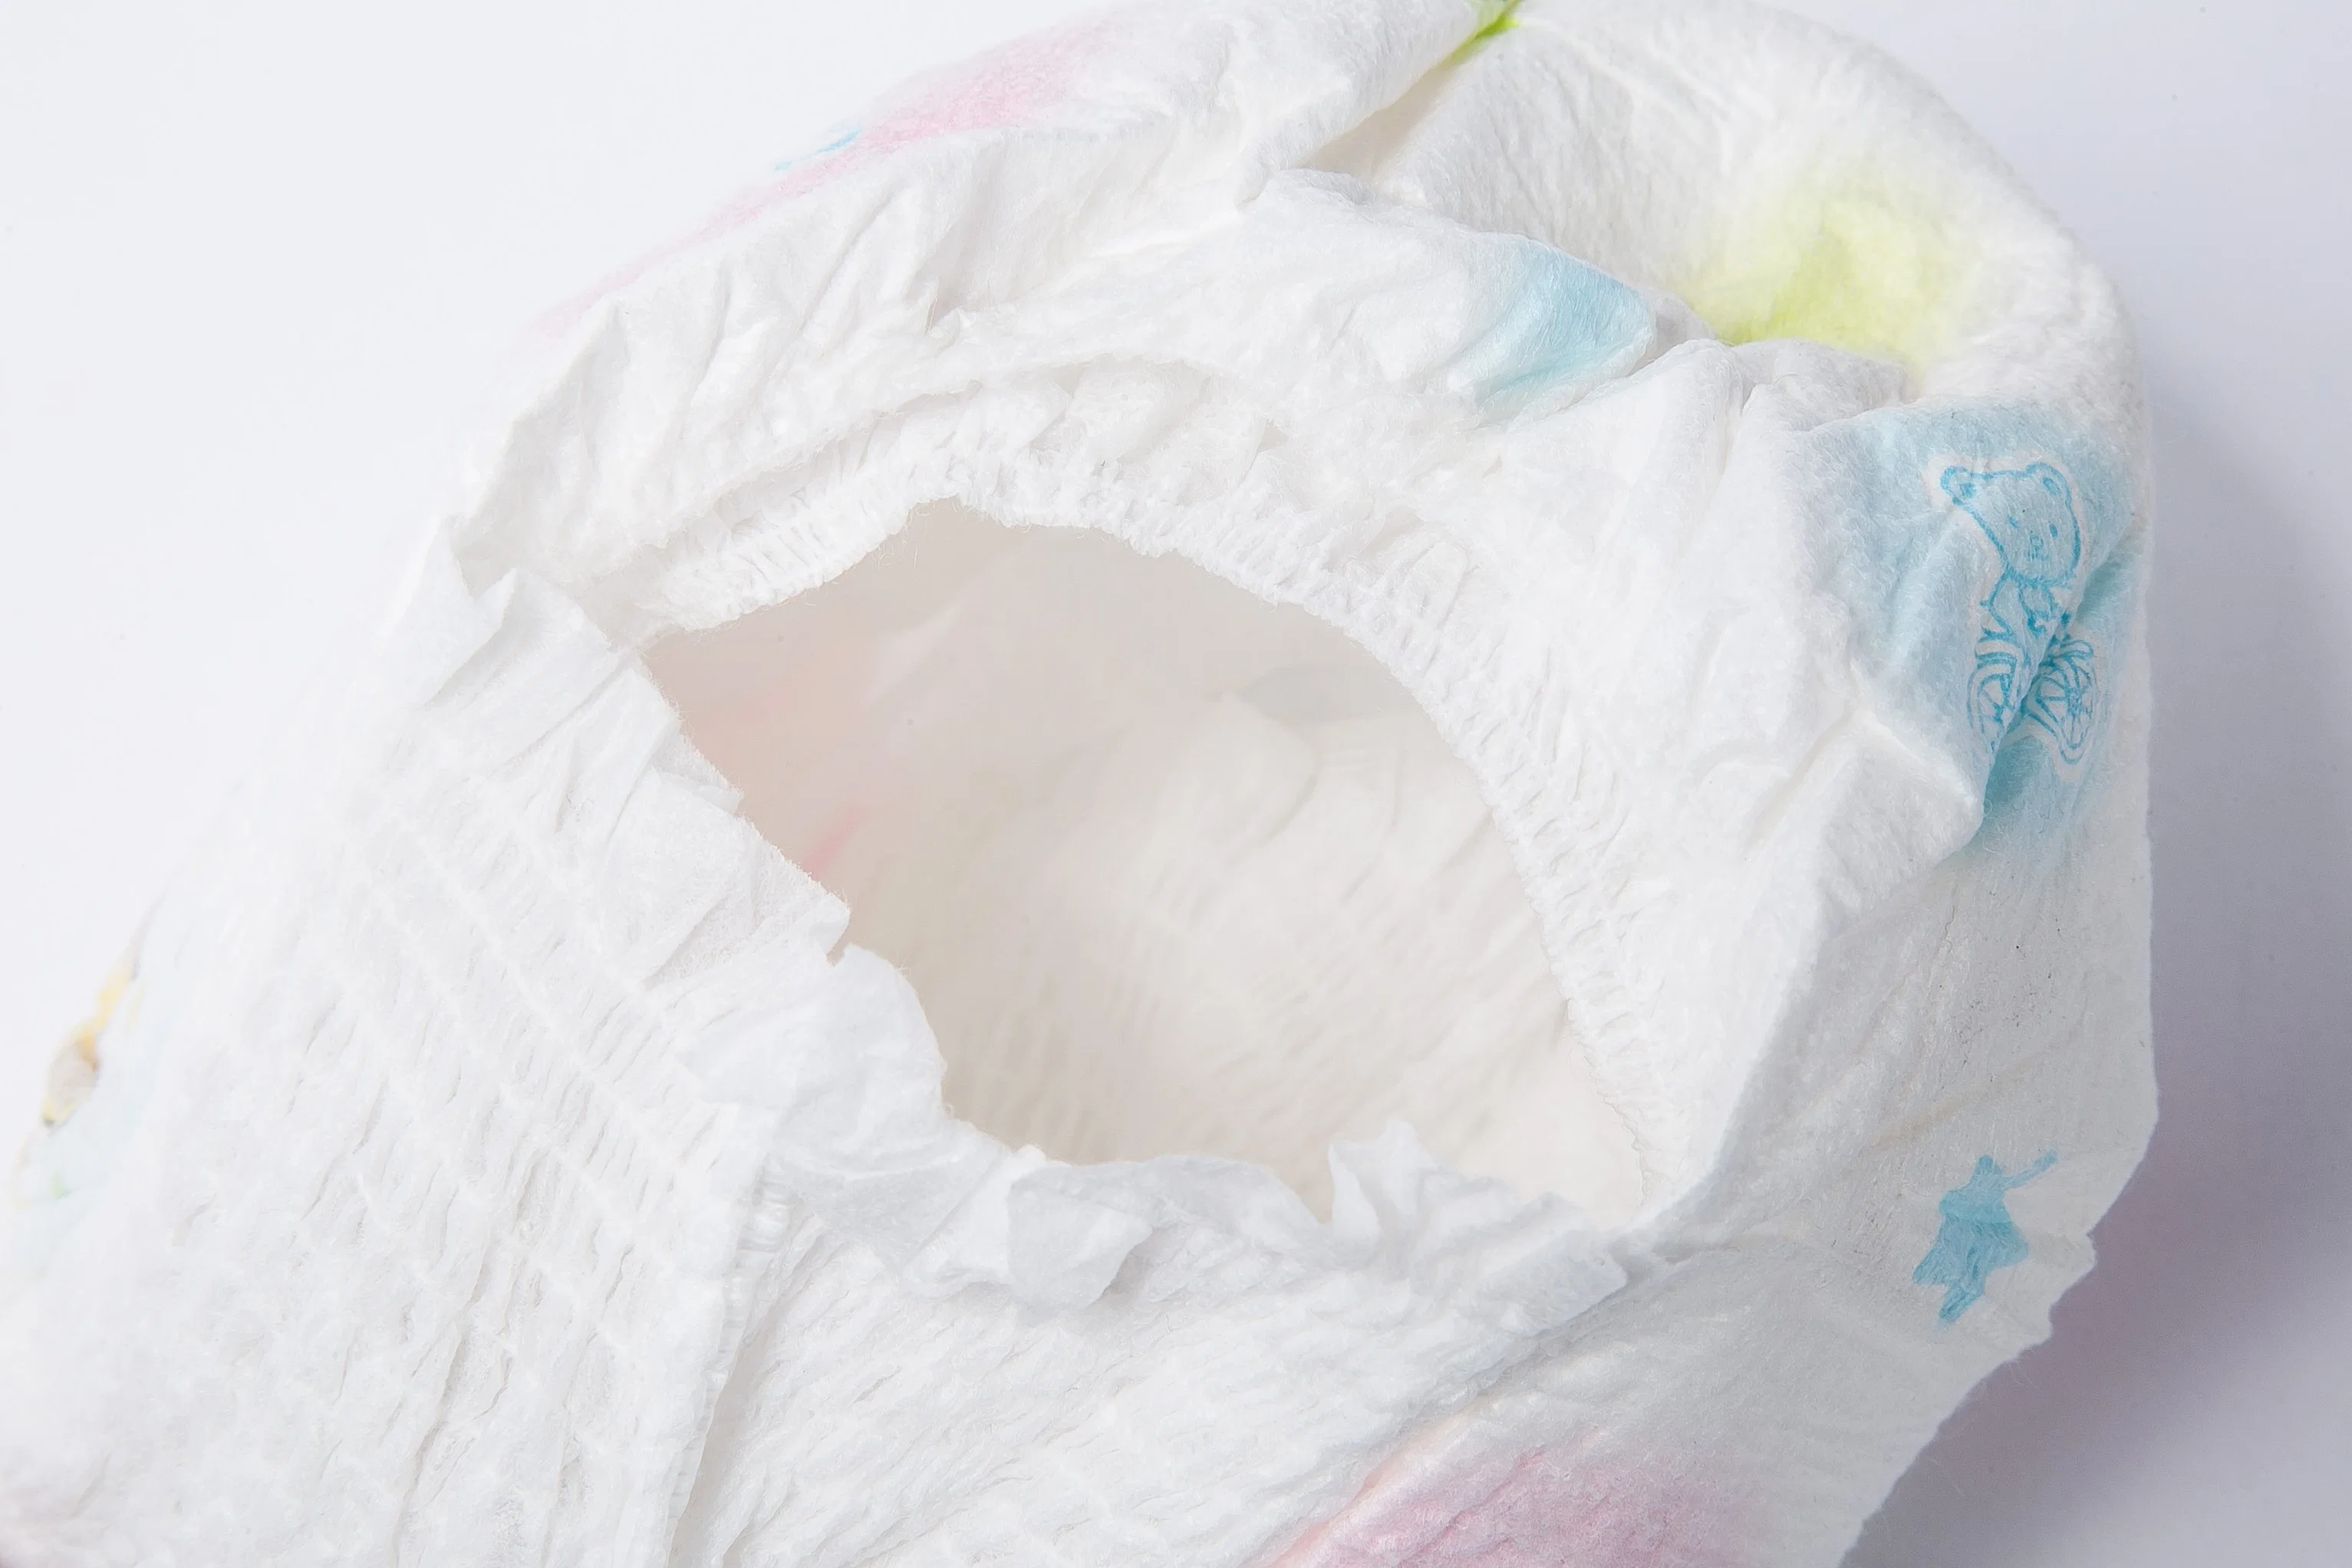 Venta caliente bebé jale pantalones talla L Niños pañales materiales seguros, indicador de humedad evita las fugas de materiales